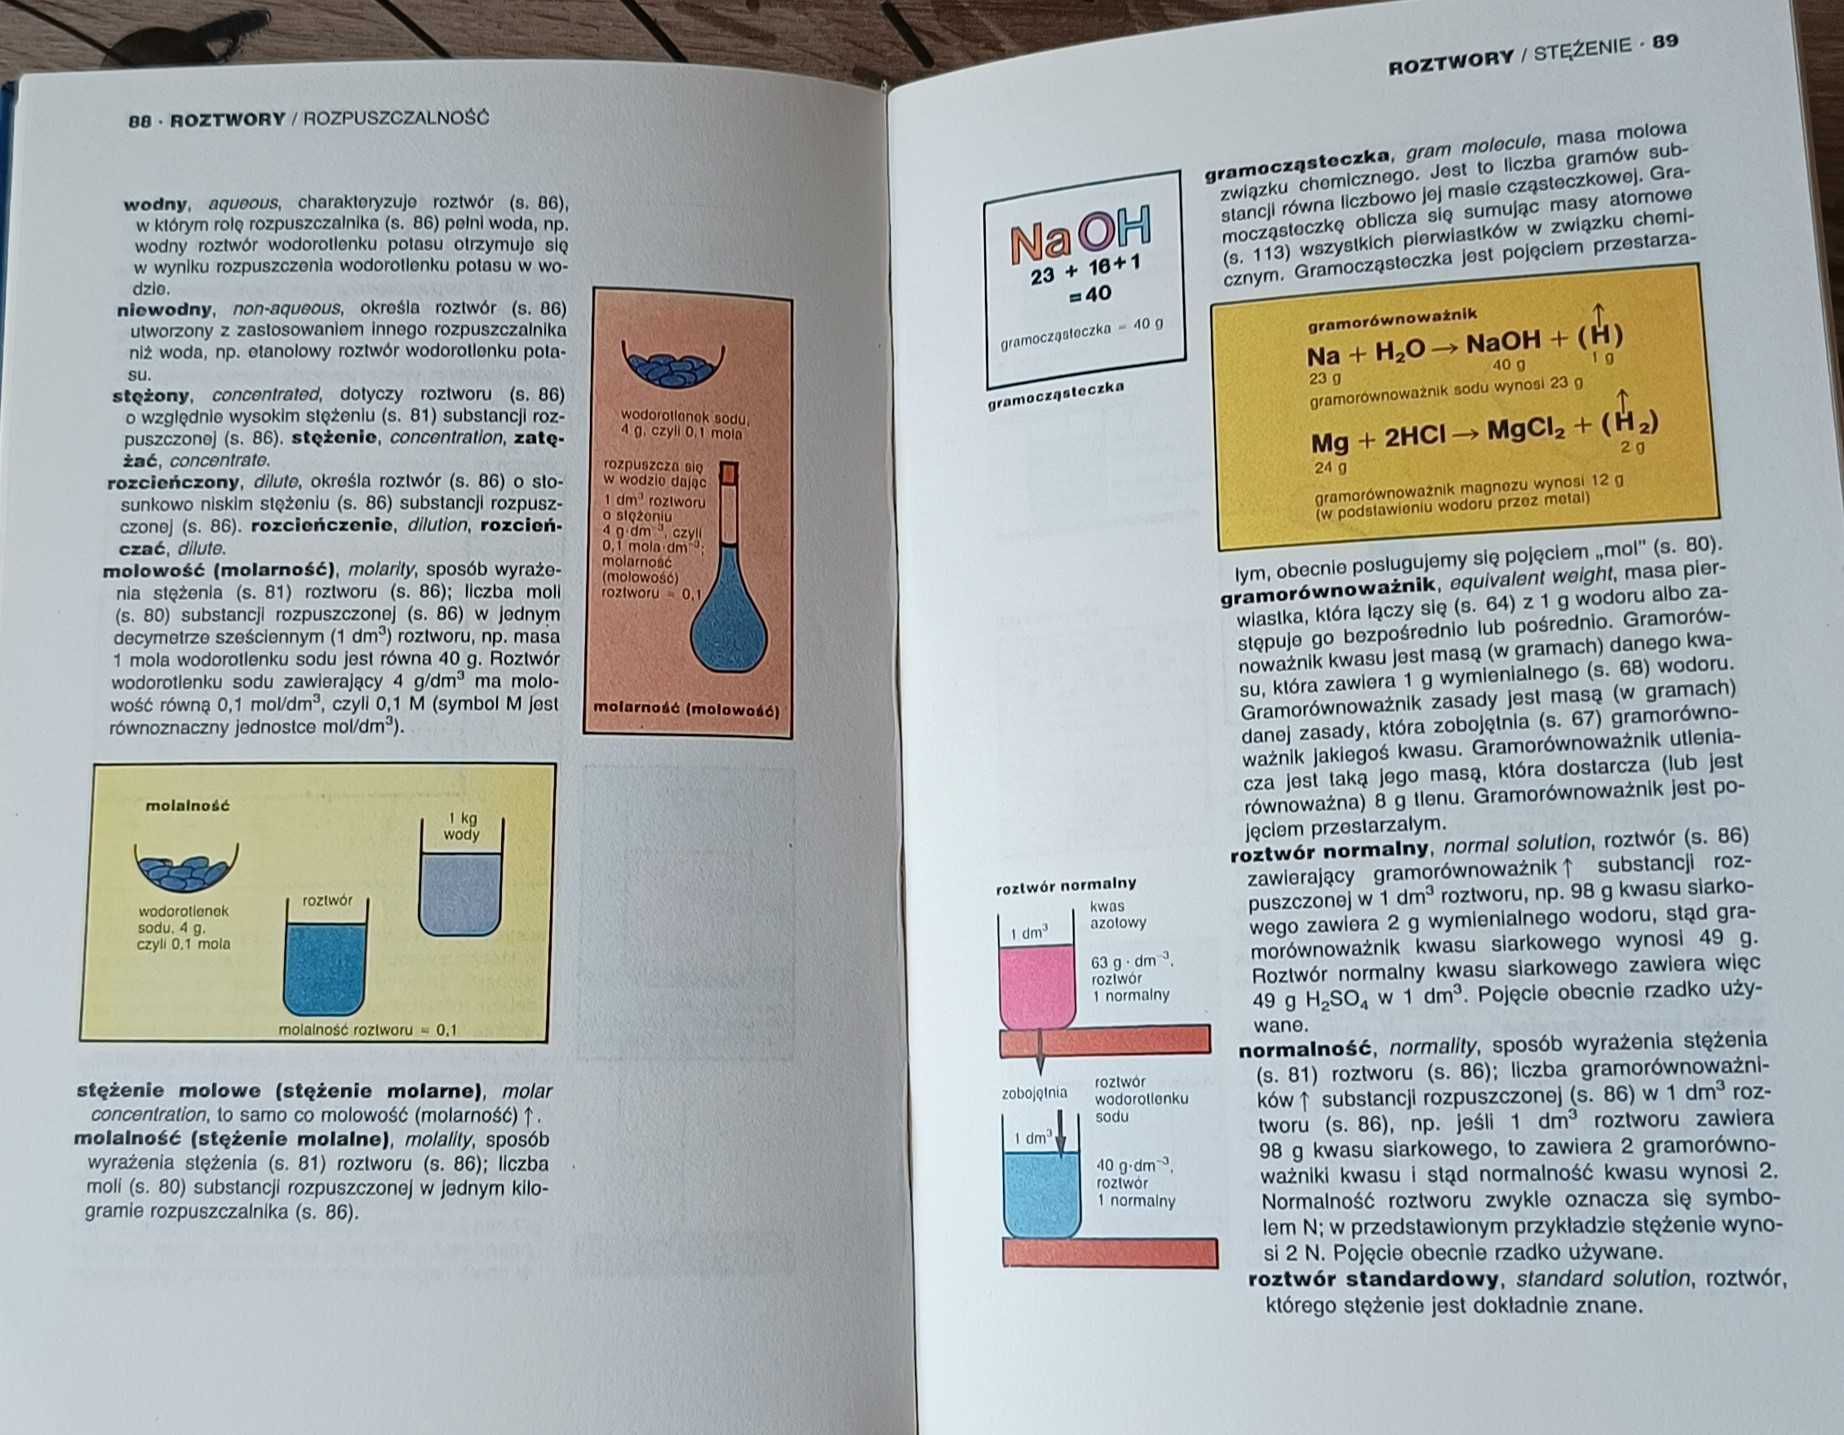 Ilustrowany Słownik Chemiczny